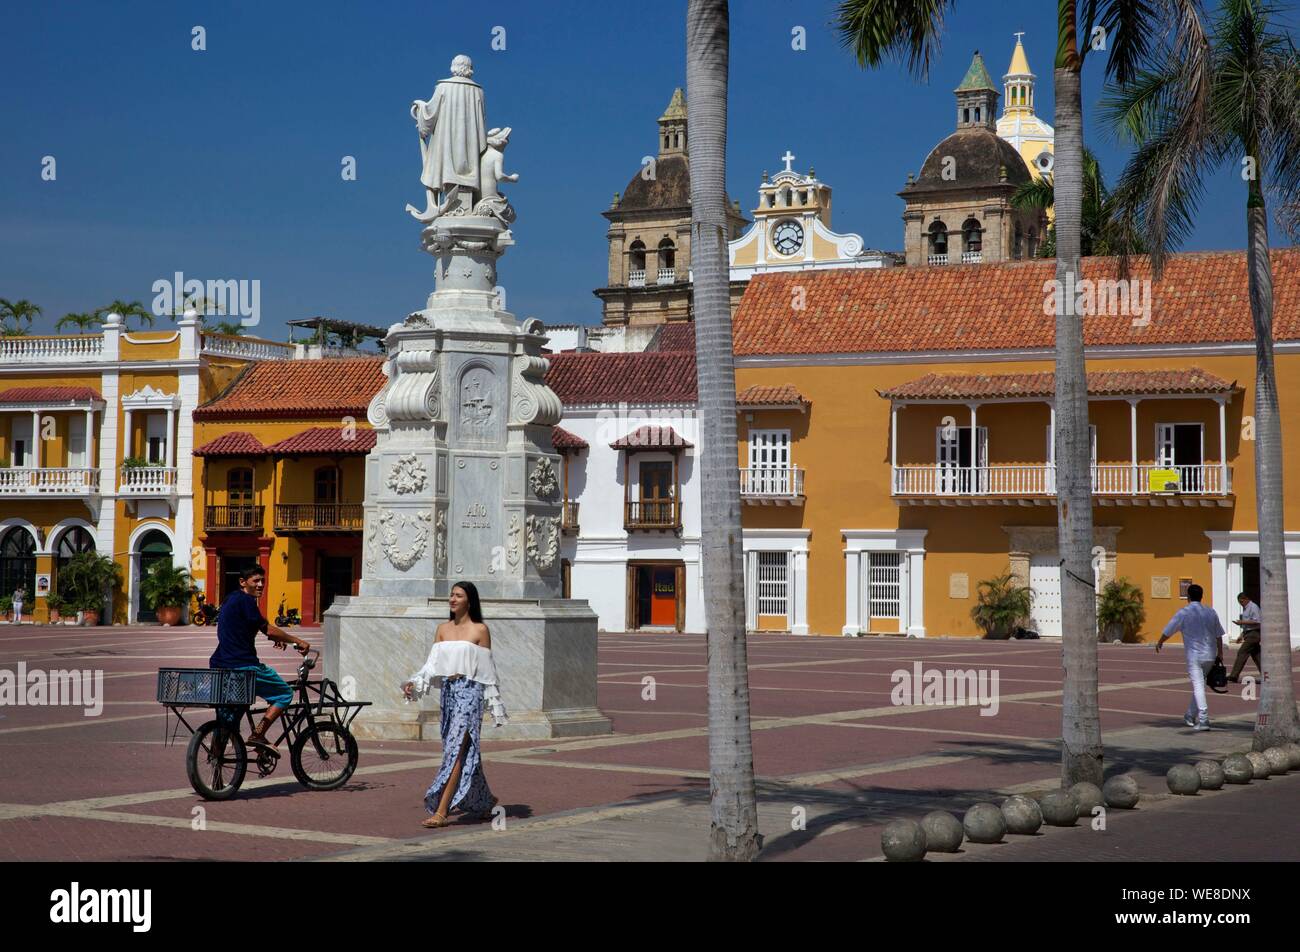 La Colombia, Dipartimento di Bolivar, Cartagena, elencati come patrimonio mondiale dall' UNESCO, il giovanissimo colombiano elegantemente vestito sulla piazza di San Pietro Claver e le sue facciate coloniale, situato nella parte vecchia della città Foto Stock